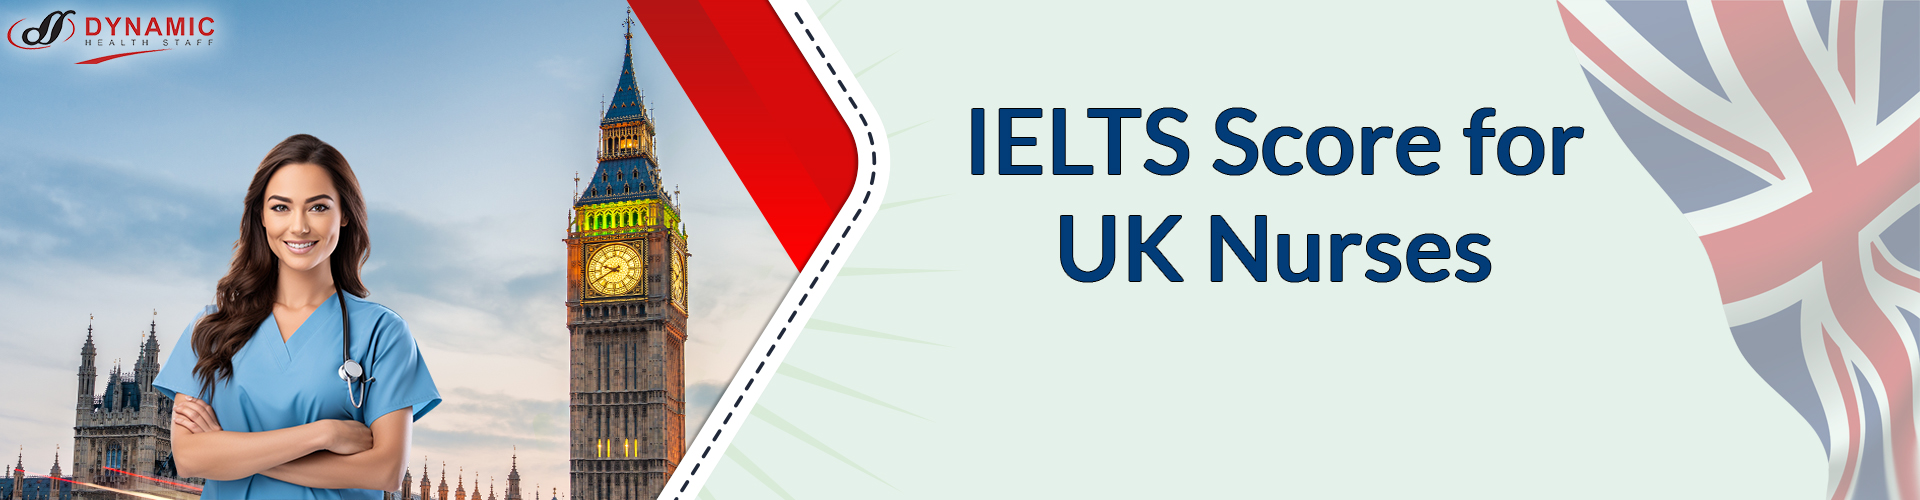 IELTS Score for UK Nurses